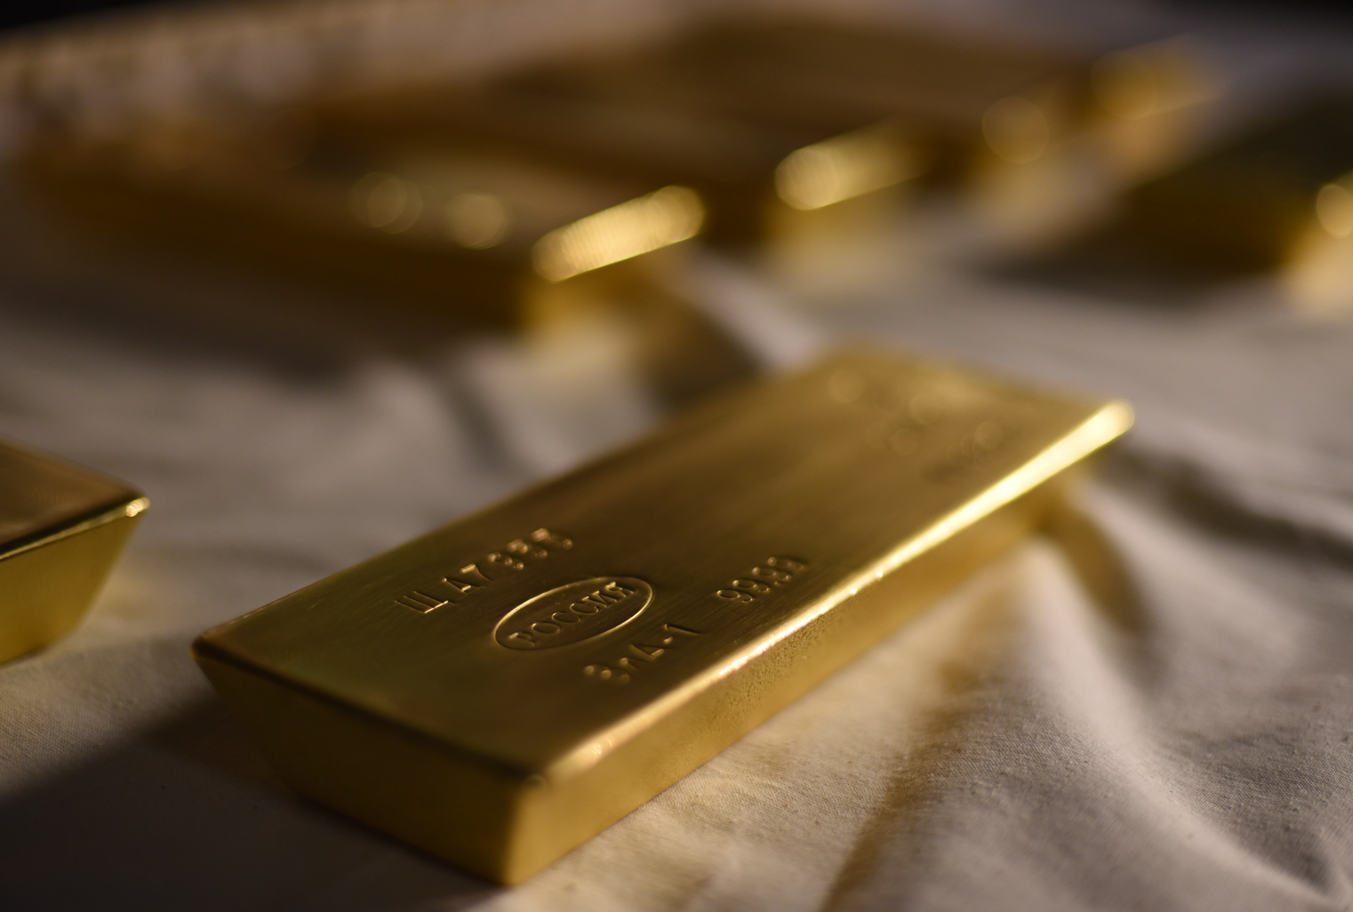 Altın piyasasına iyimserlik yeniden hakim olurken bu hafta ons altın fiyatının 1950 $ seviyesi altında kalacağı öngörülüyor